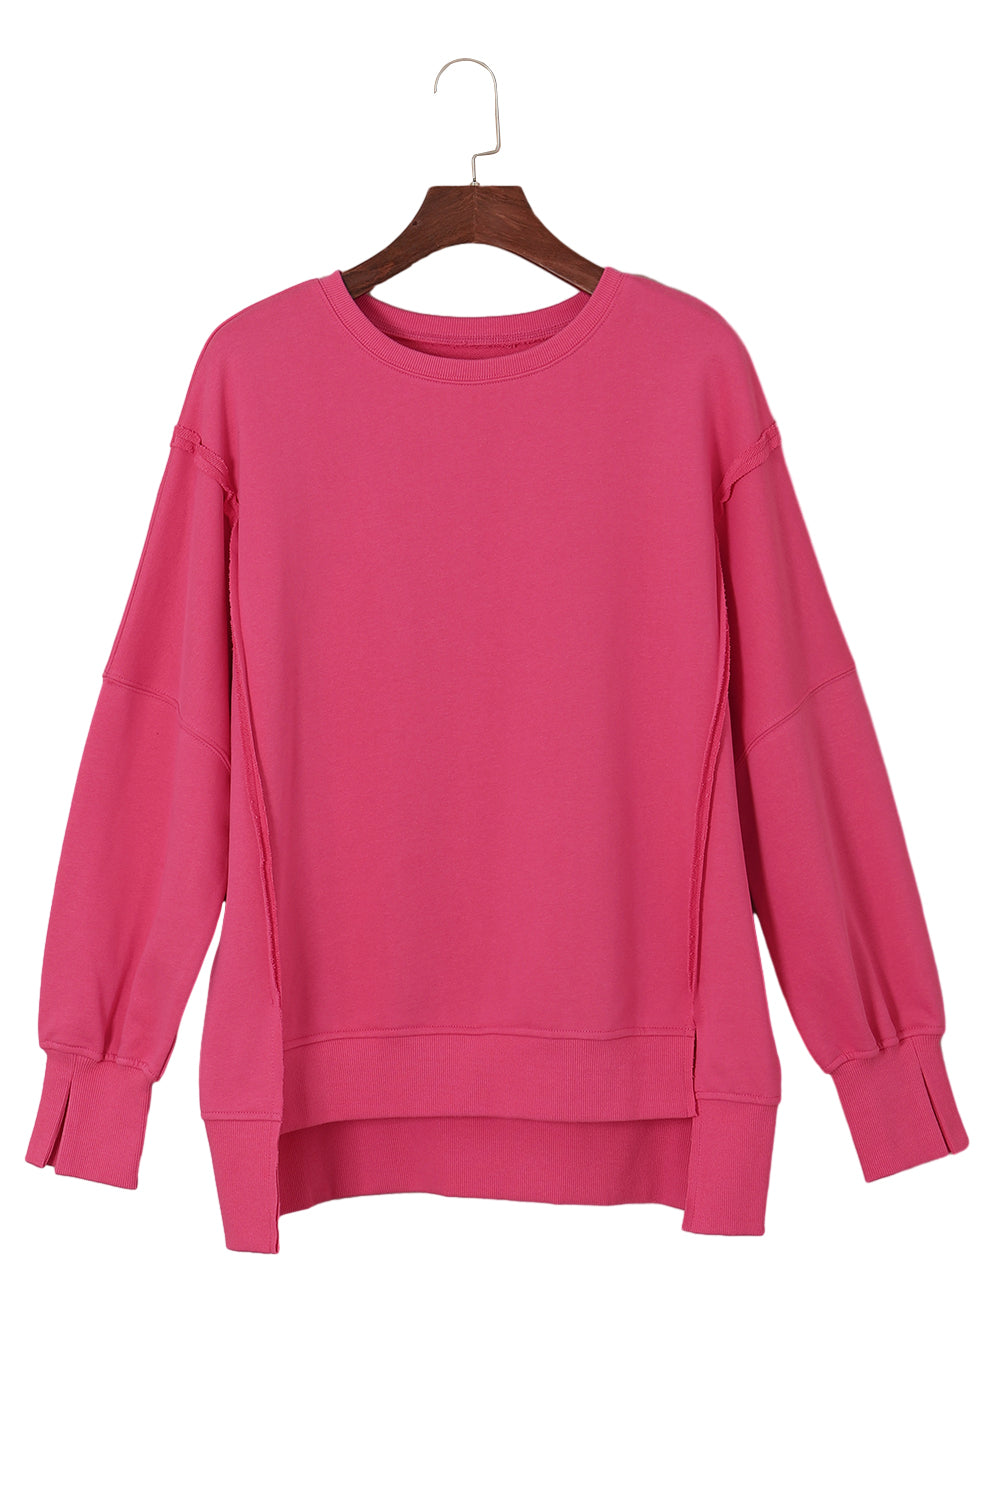 Sweat-shirt rose à coutures apparentes, épaules tombantes, fente, ourlet haut et bas